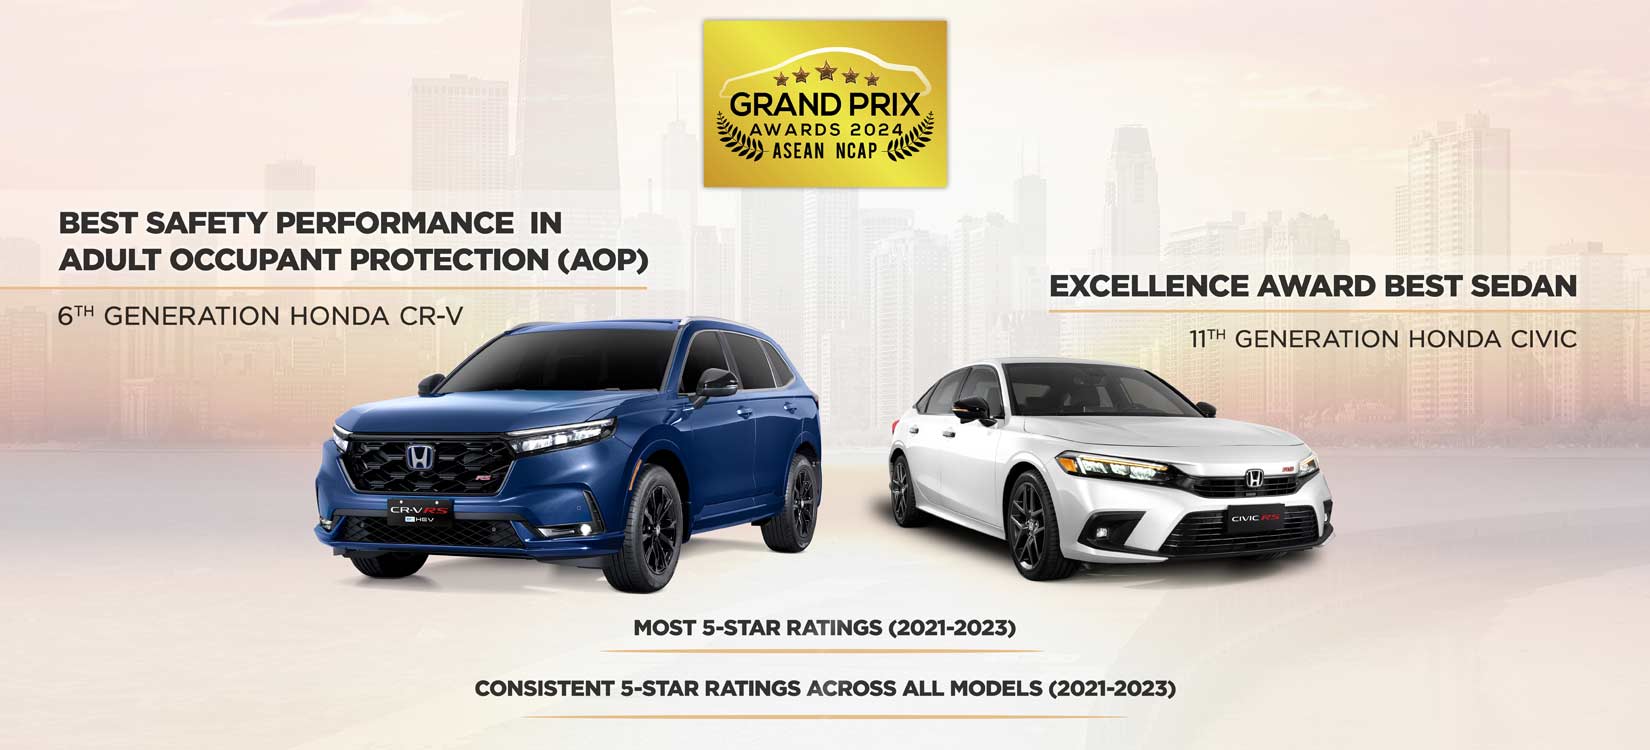 Honda CR-V and Civic Win Major Awards at the ASEAN NCAP Grand Prix Awards 2024